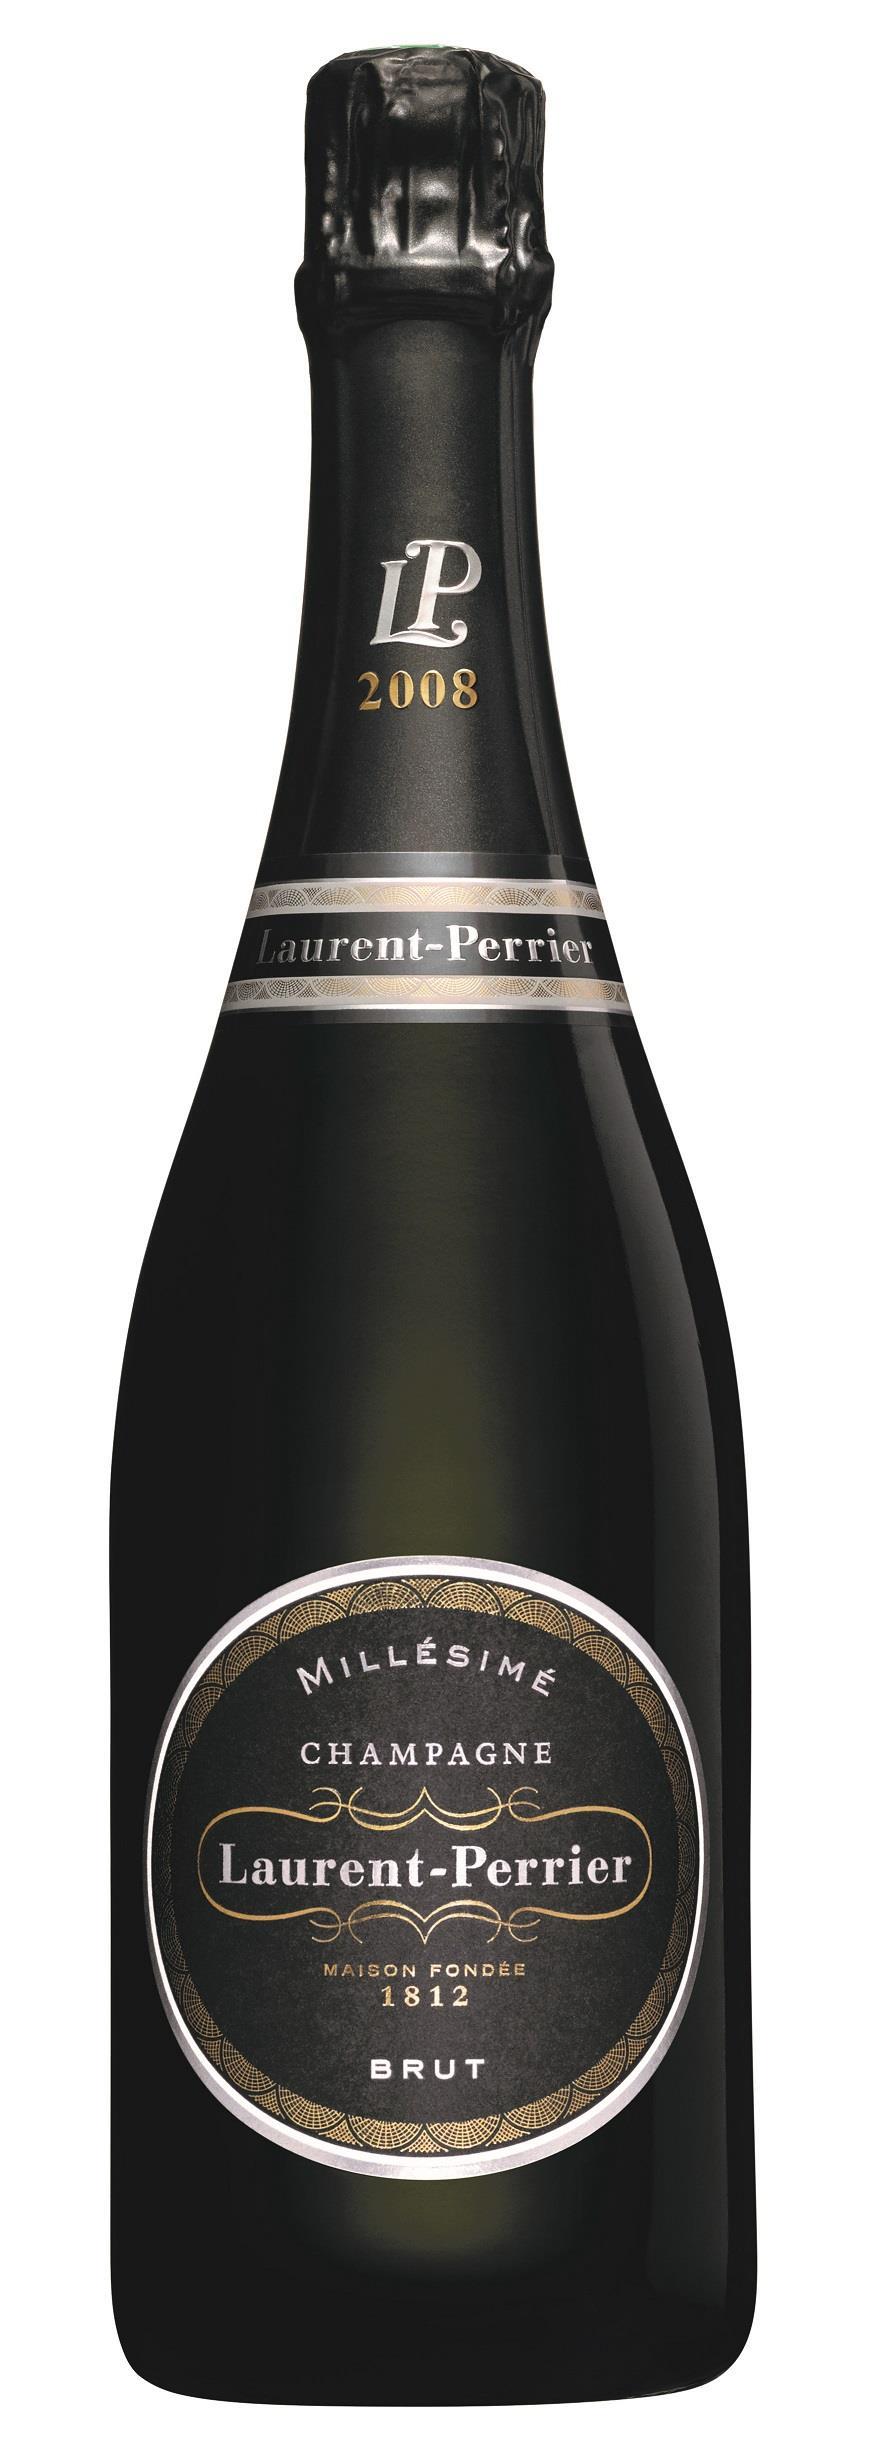 Brut Millésimé Champagne 2012 von Laurent-Perrier